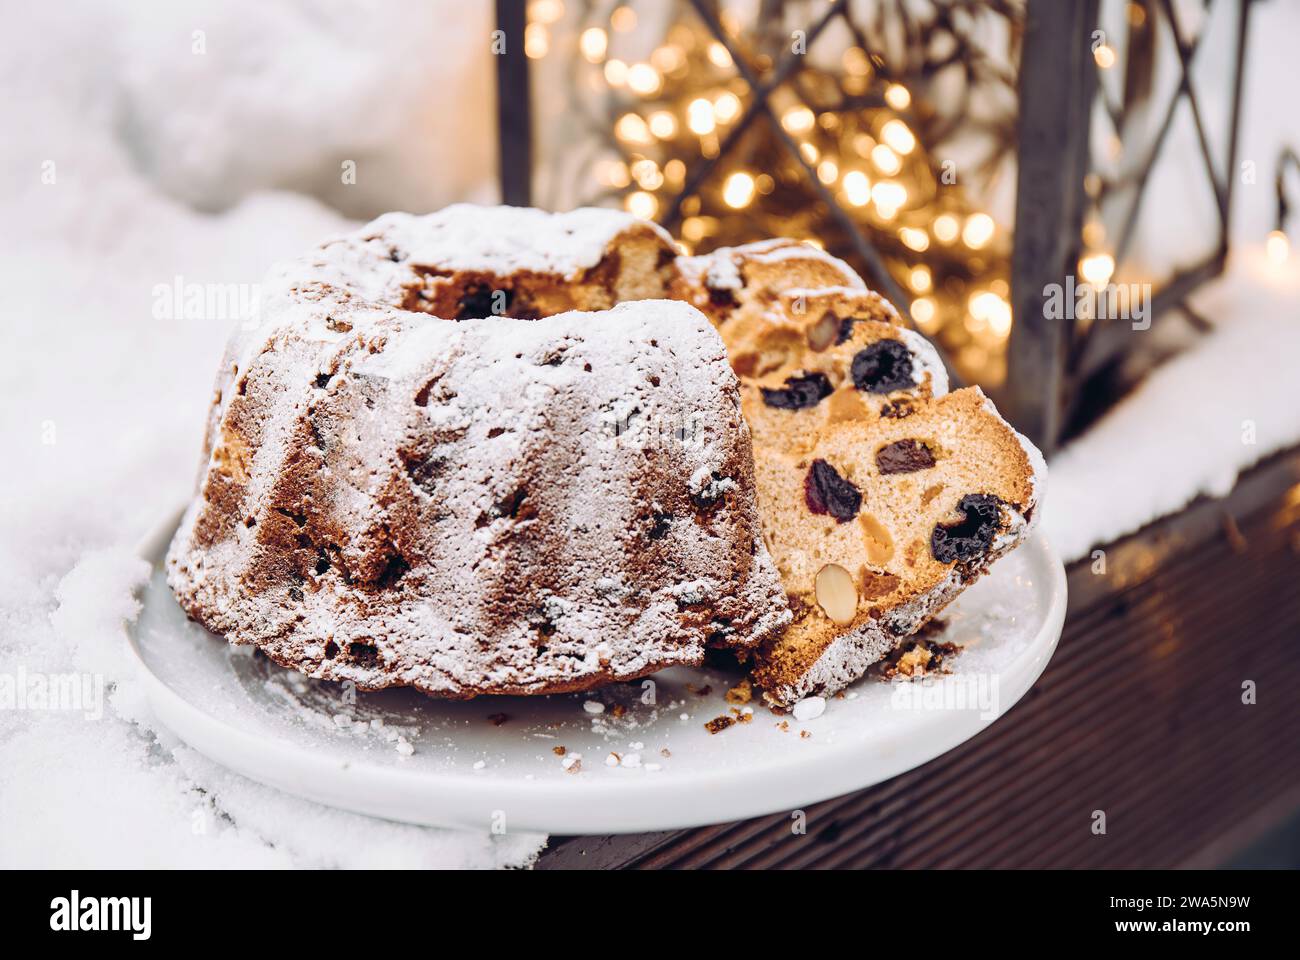 Traditioneller Weihnachtskuchen oder Obstkuchen mit getrockneten Früchten auf Teller mit ausgeschnittenen Stücken, Schnee und Weihnachtsbeleuchtung auf Hintergrund. Stockfoto